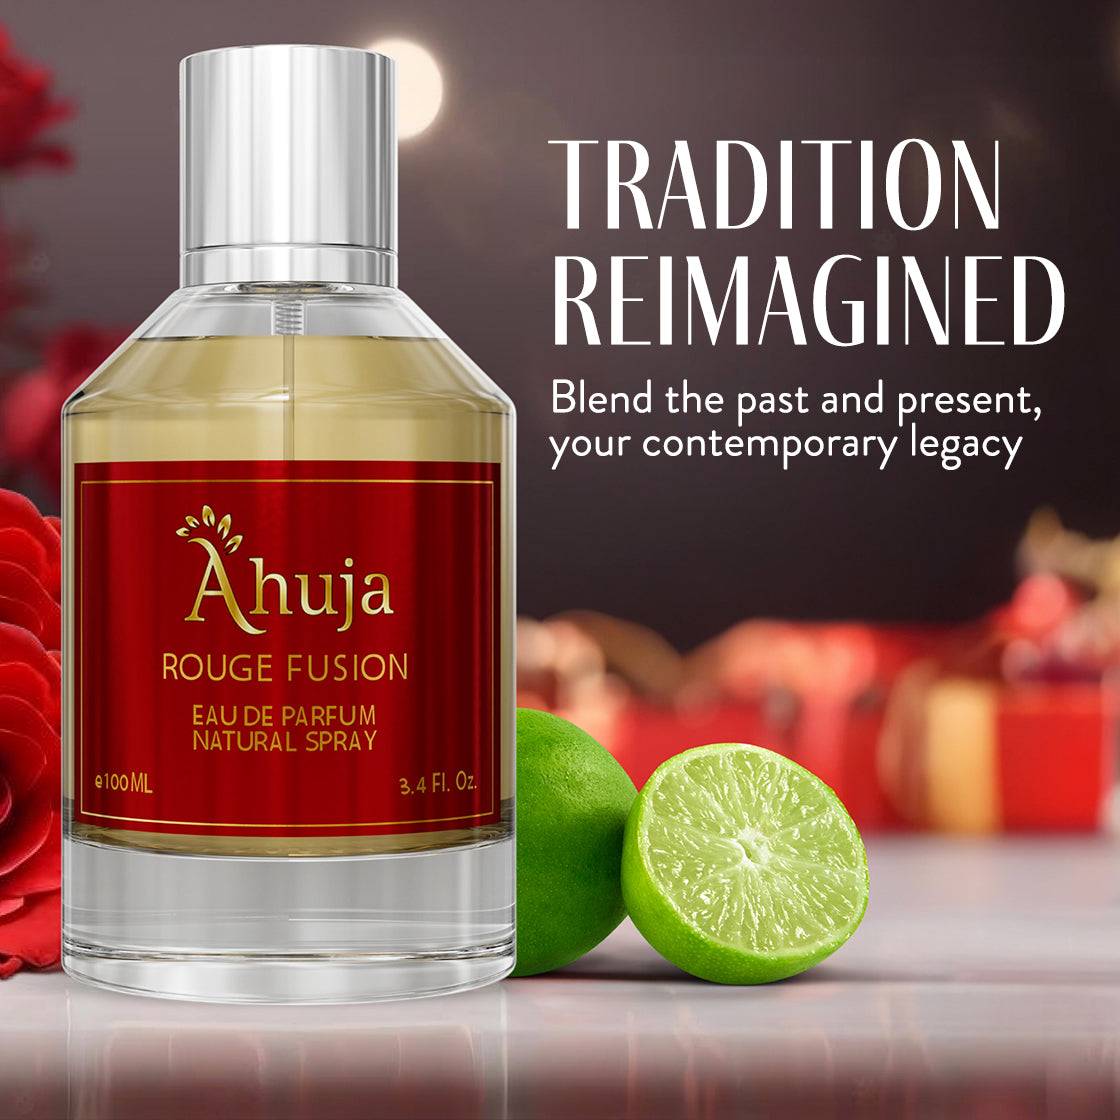 Ahuja Rouge Fusion 3.4 fl oz Eau De Parfum (Unisex)